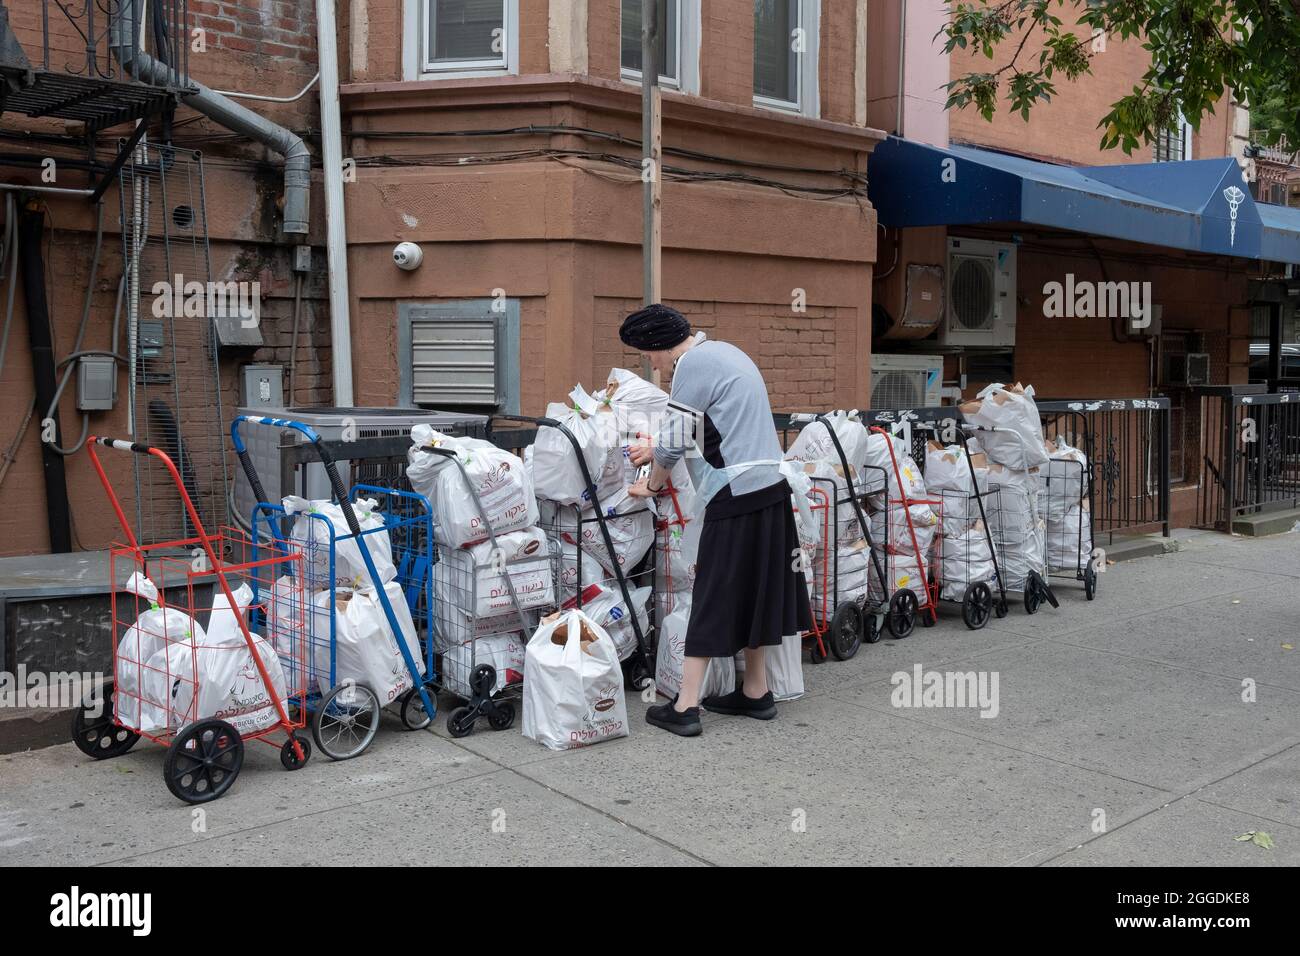 Un voluntario del grupo judío ortodoxo Satmar prepara paquetes de alimentos para ser dados a los necesitados y a aquellos en hospitales que necesitan comida kosher de glatt. Foto de stock